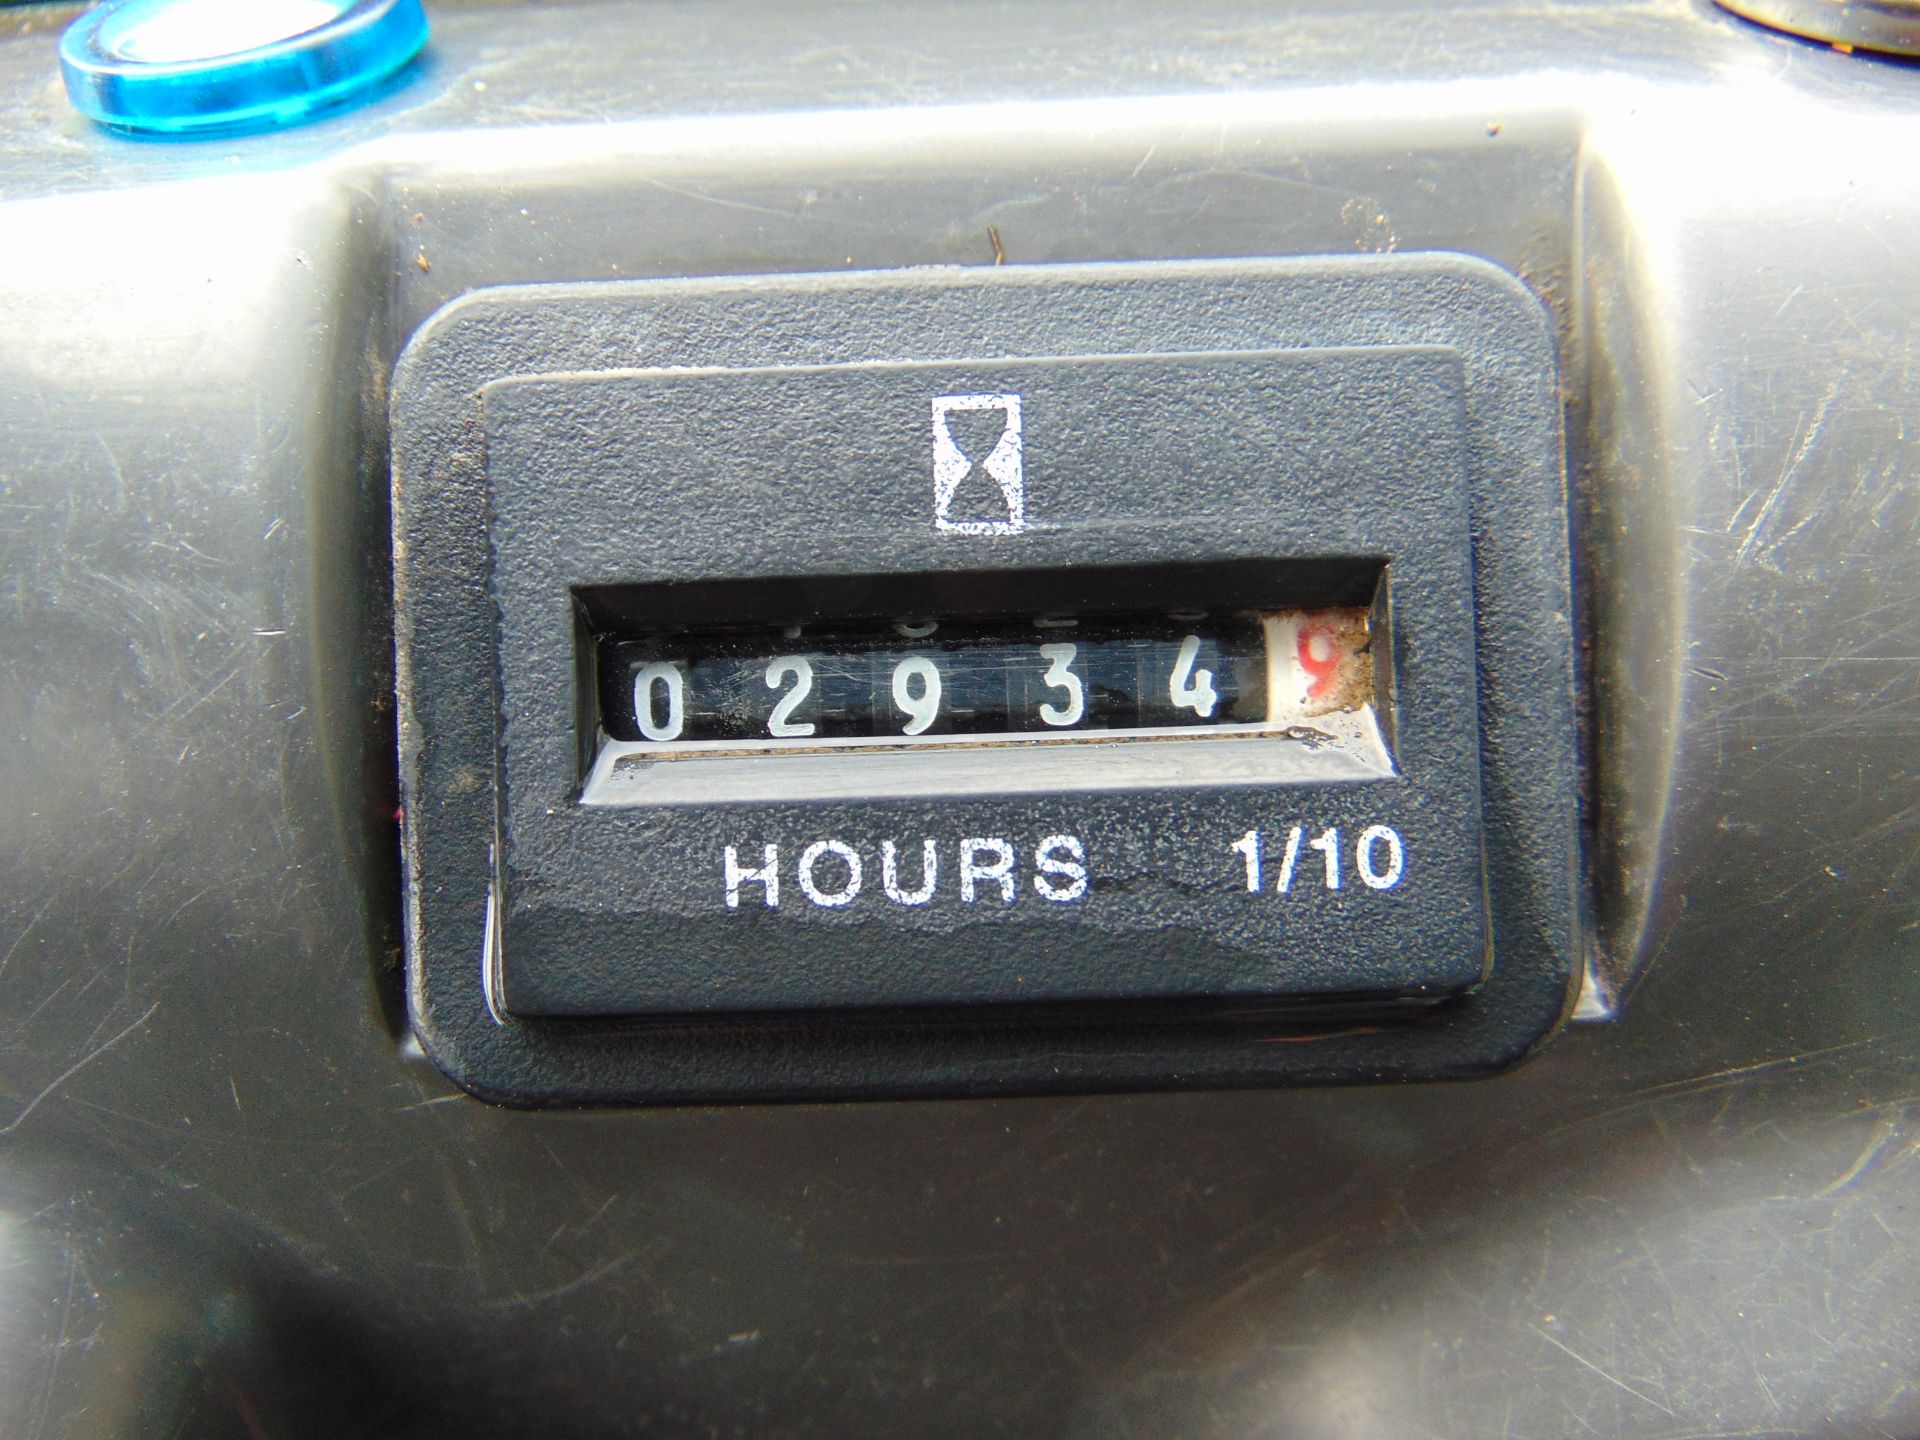 Kawasaki Mule 4010 4WD Diesel Utility Vehicle UTV ONLY 2,934 HOURS! - Image 11 of 21